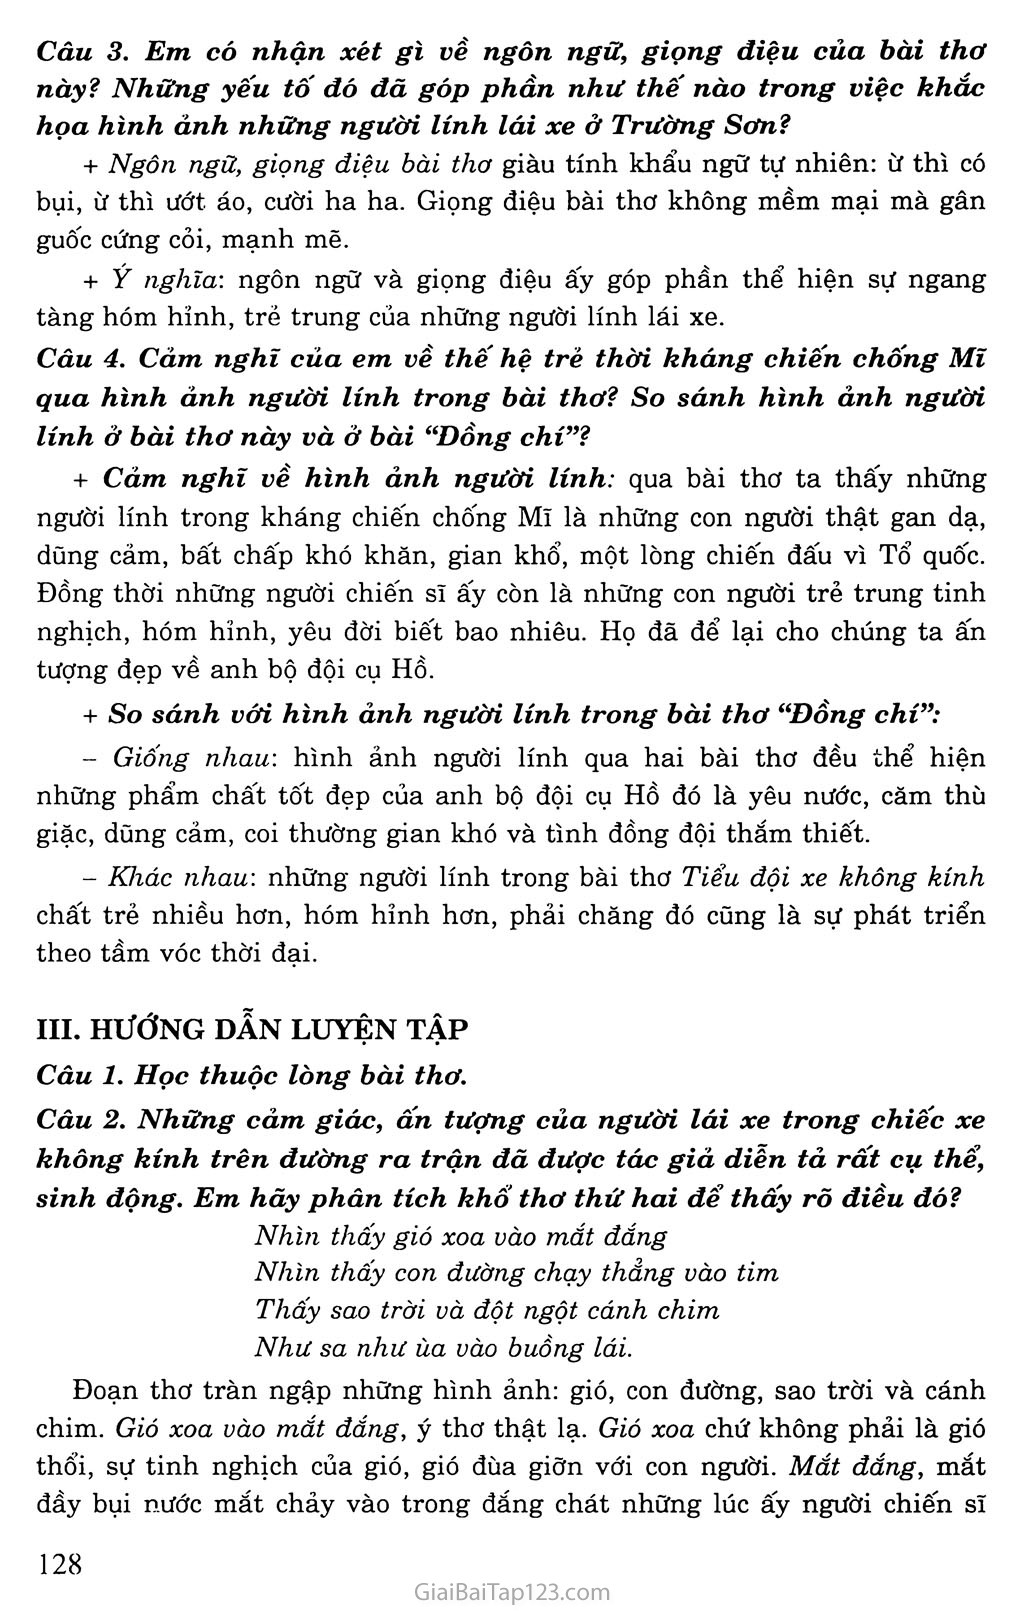 Bài thơ về tiểu đội xe không kính trang 4